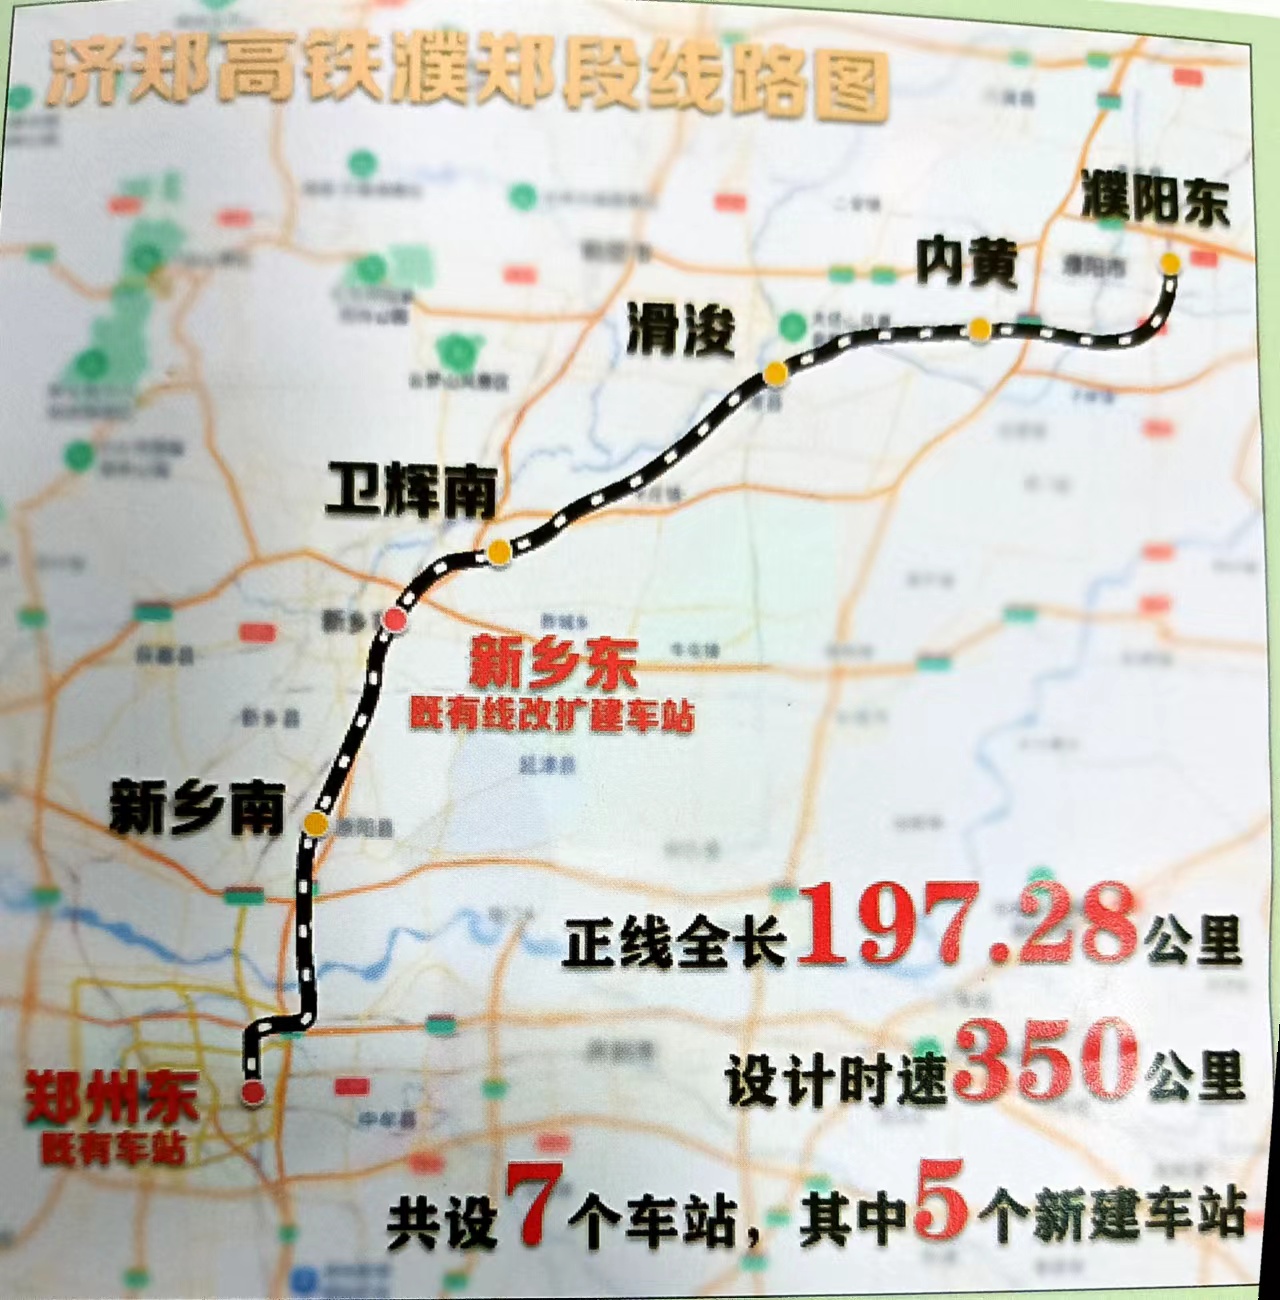 “米”字高铁让郑州加快迈向国家第一城市方阵步伐